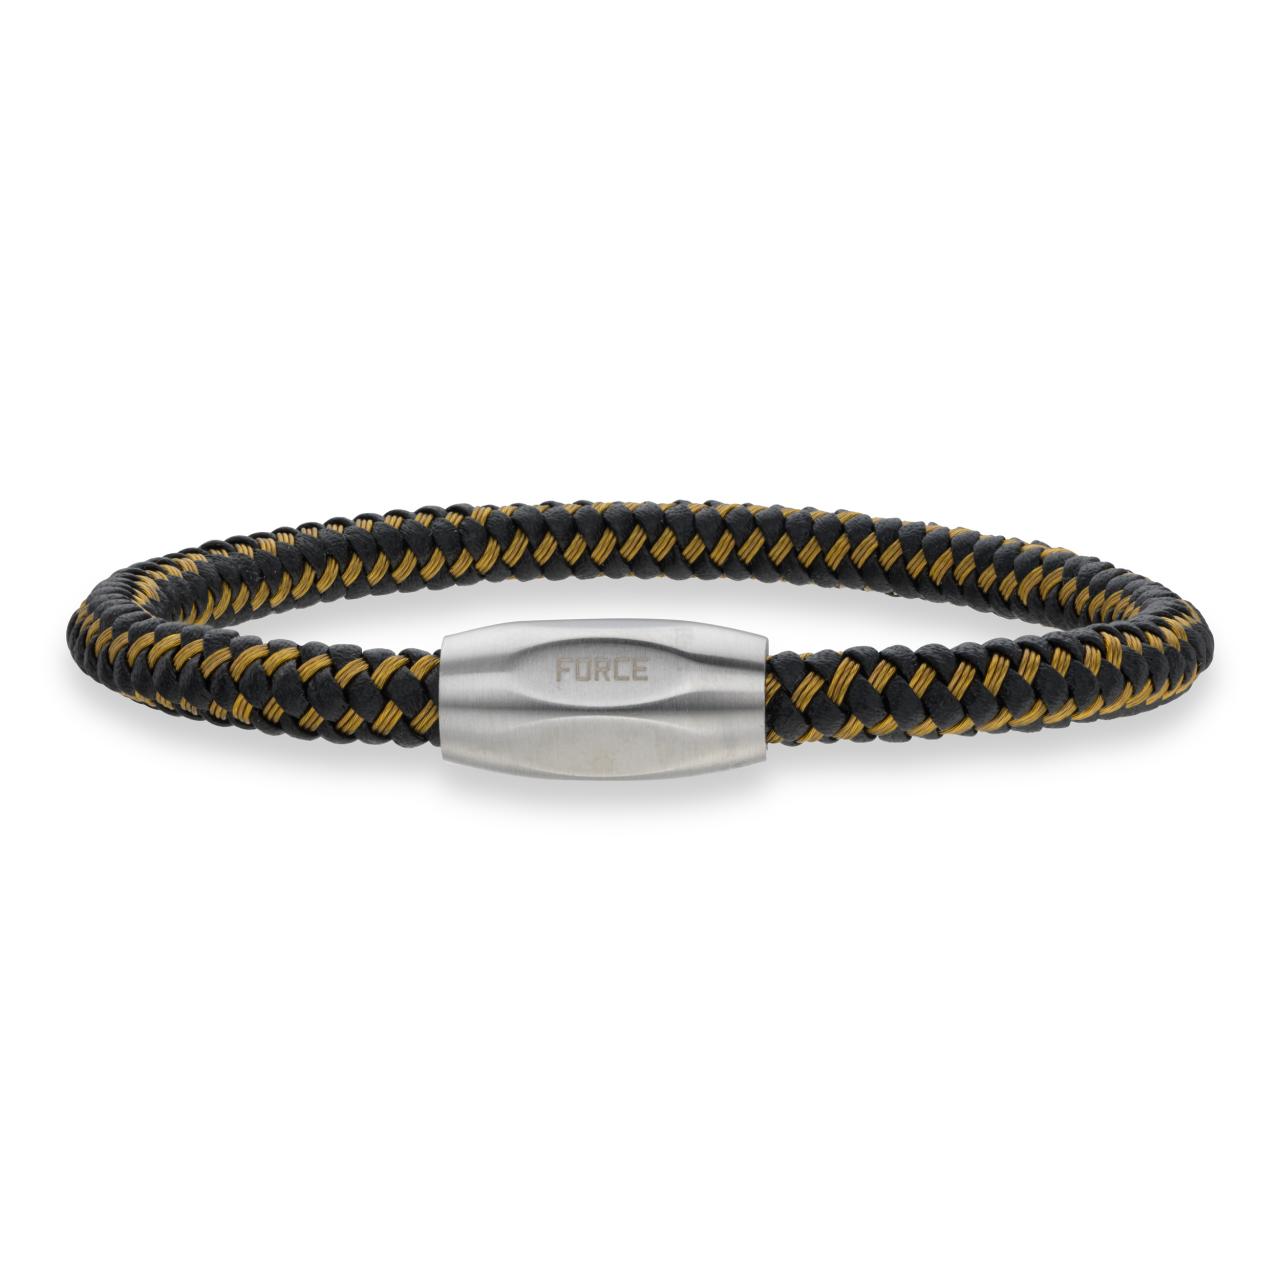 Force armbånd guld kabel/sort læder stål lås 21cm